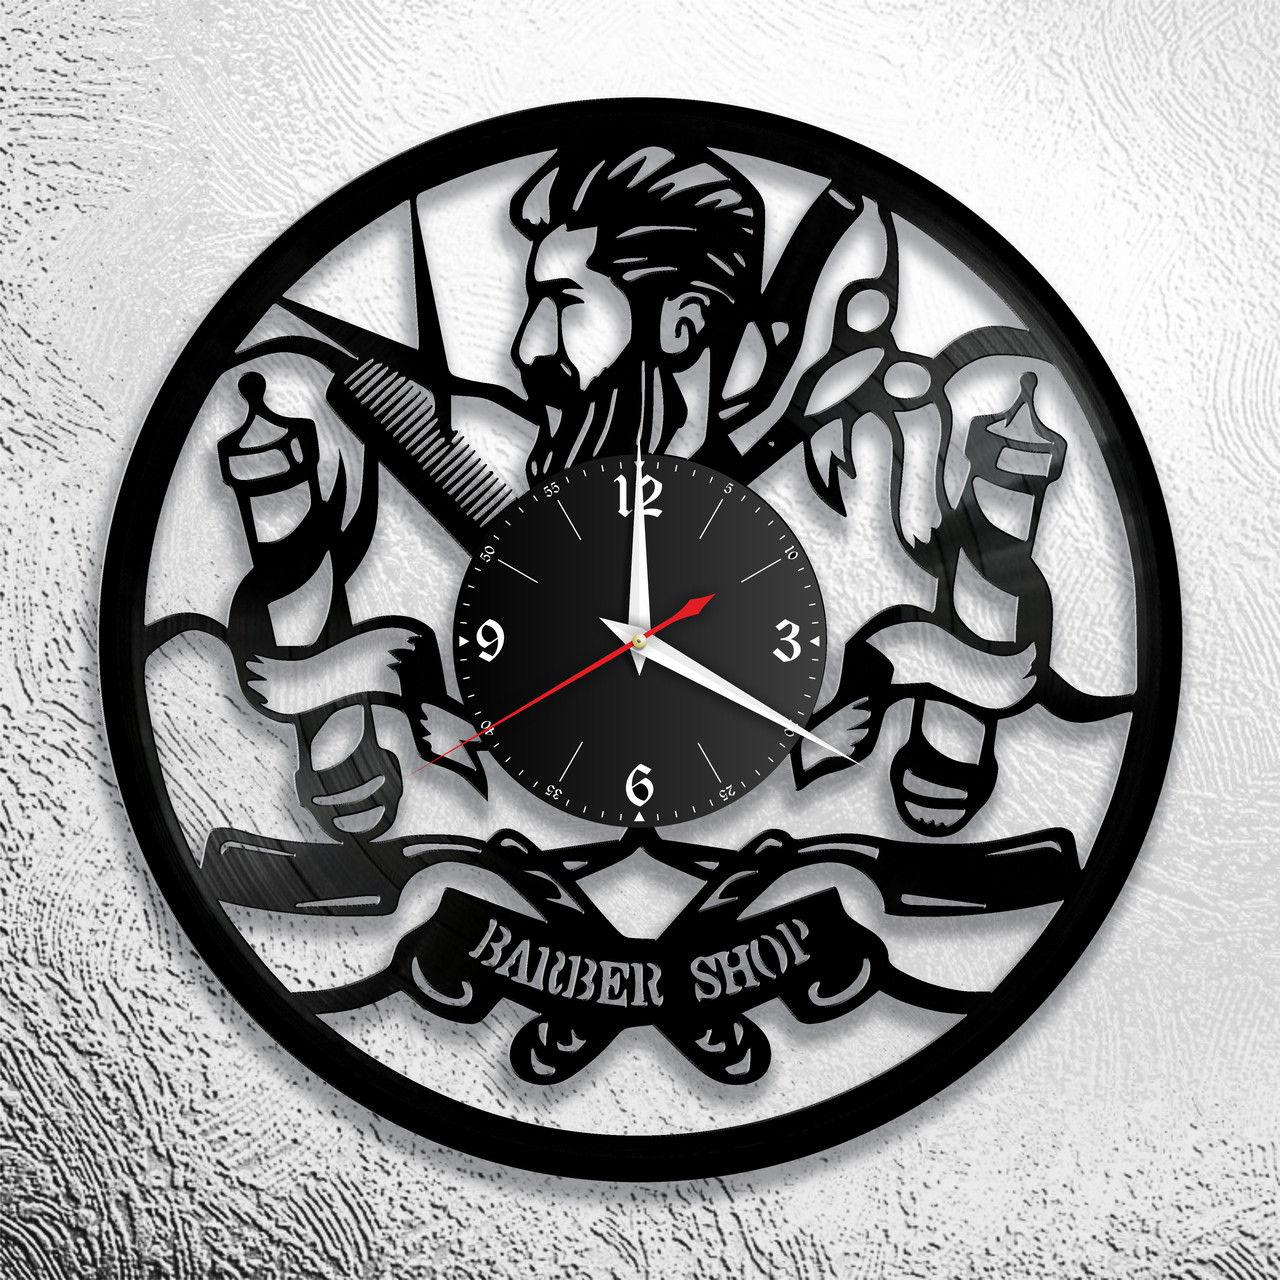 Часы из виниловой пластинки "Парикмахерская" версия 9 барбершоп, фото 1